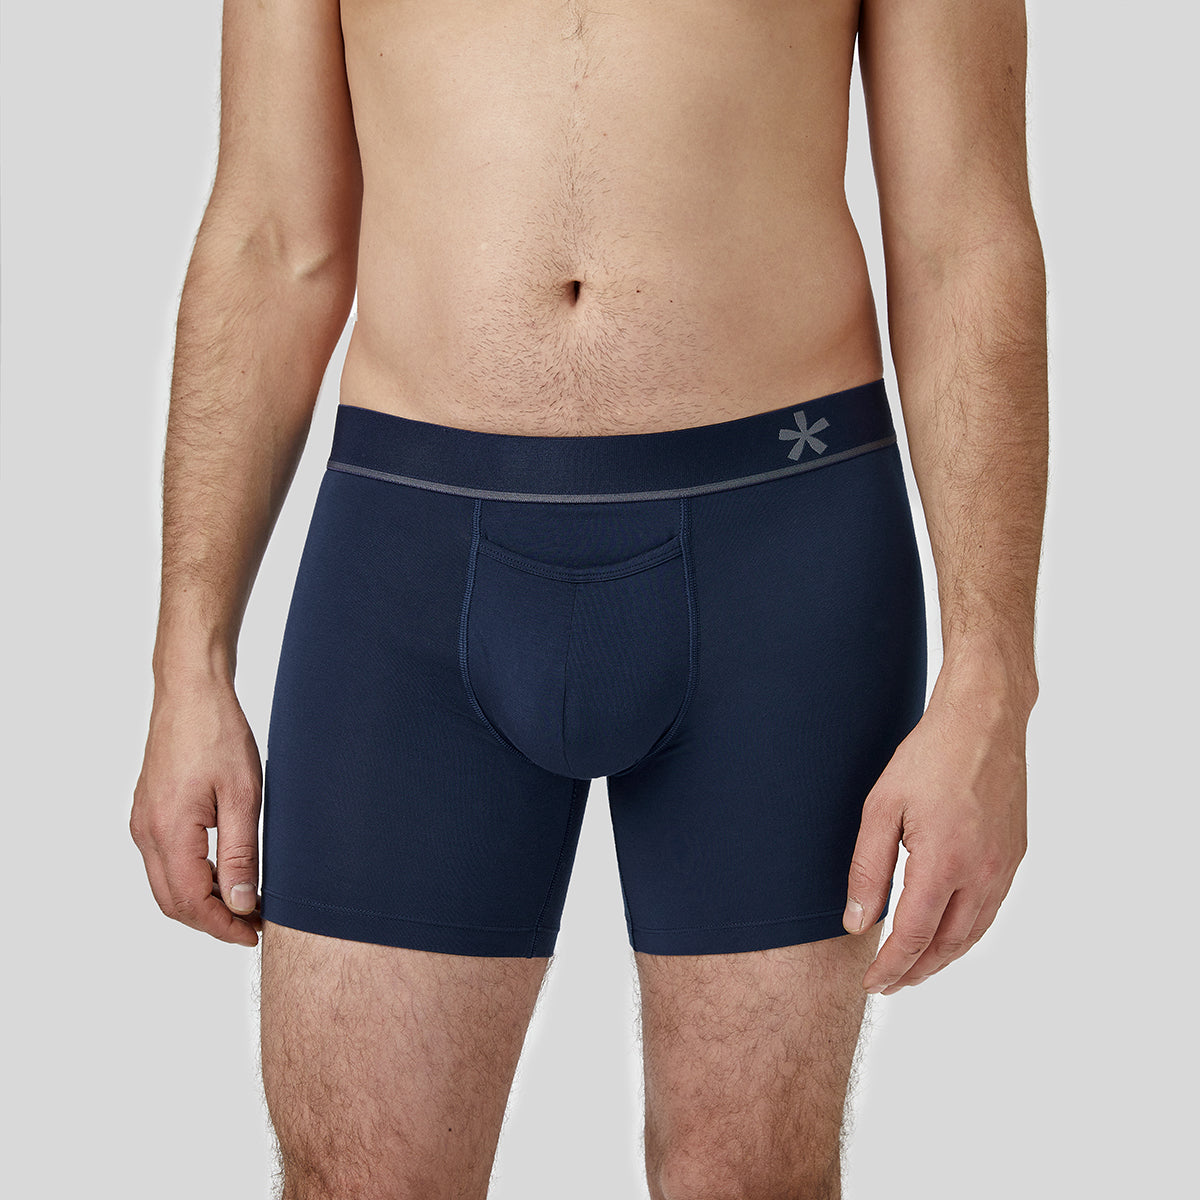 New! Under Armour men's underwear - blue Brief (fit M size), Men's Fashion,  Bottoms, New Underwear on Carousell